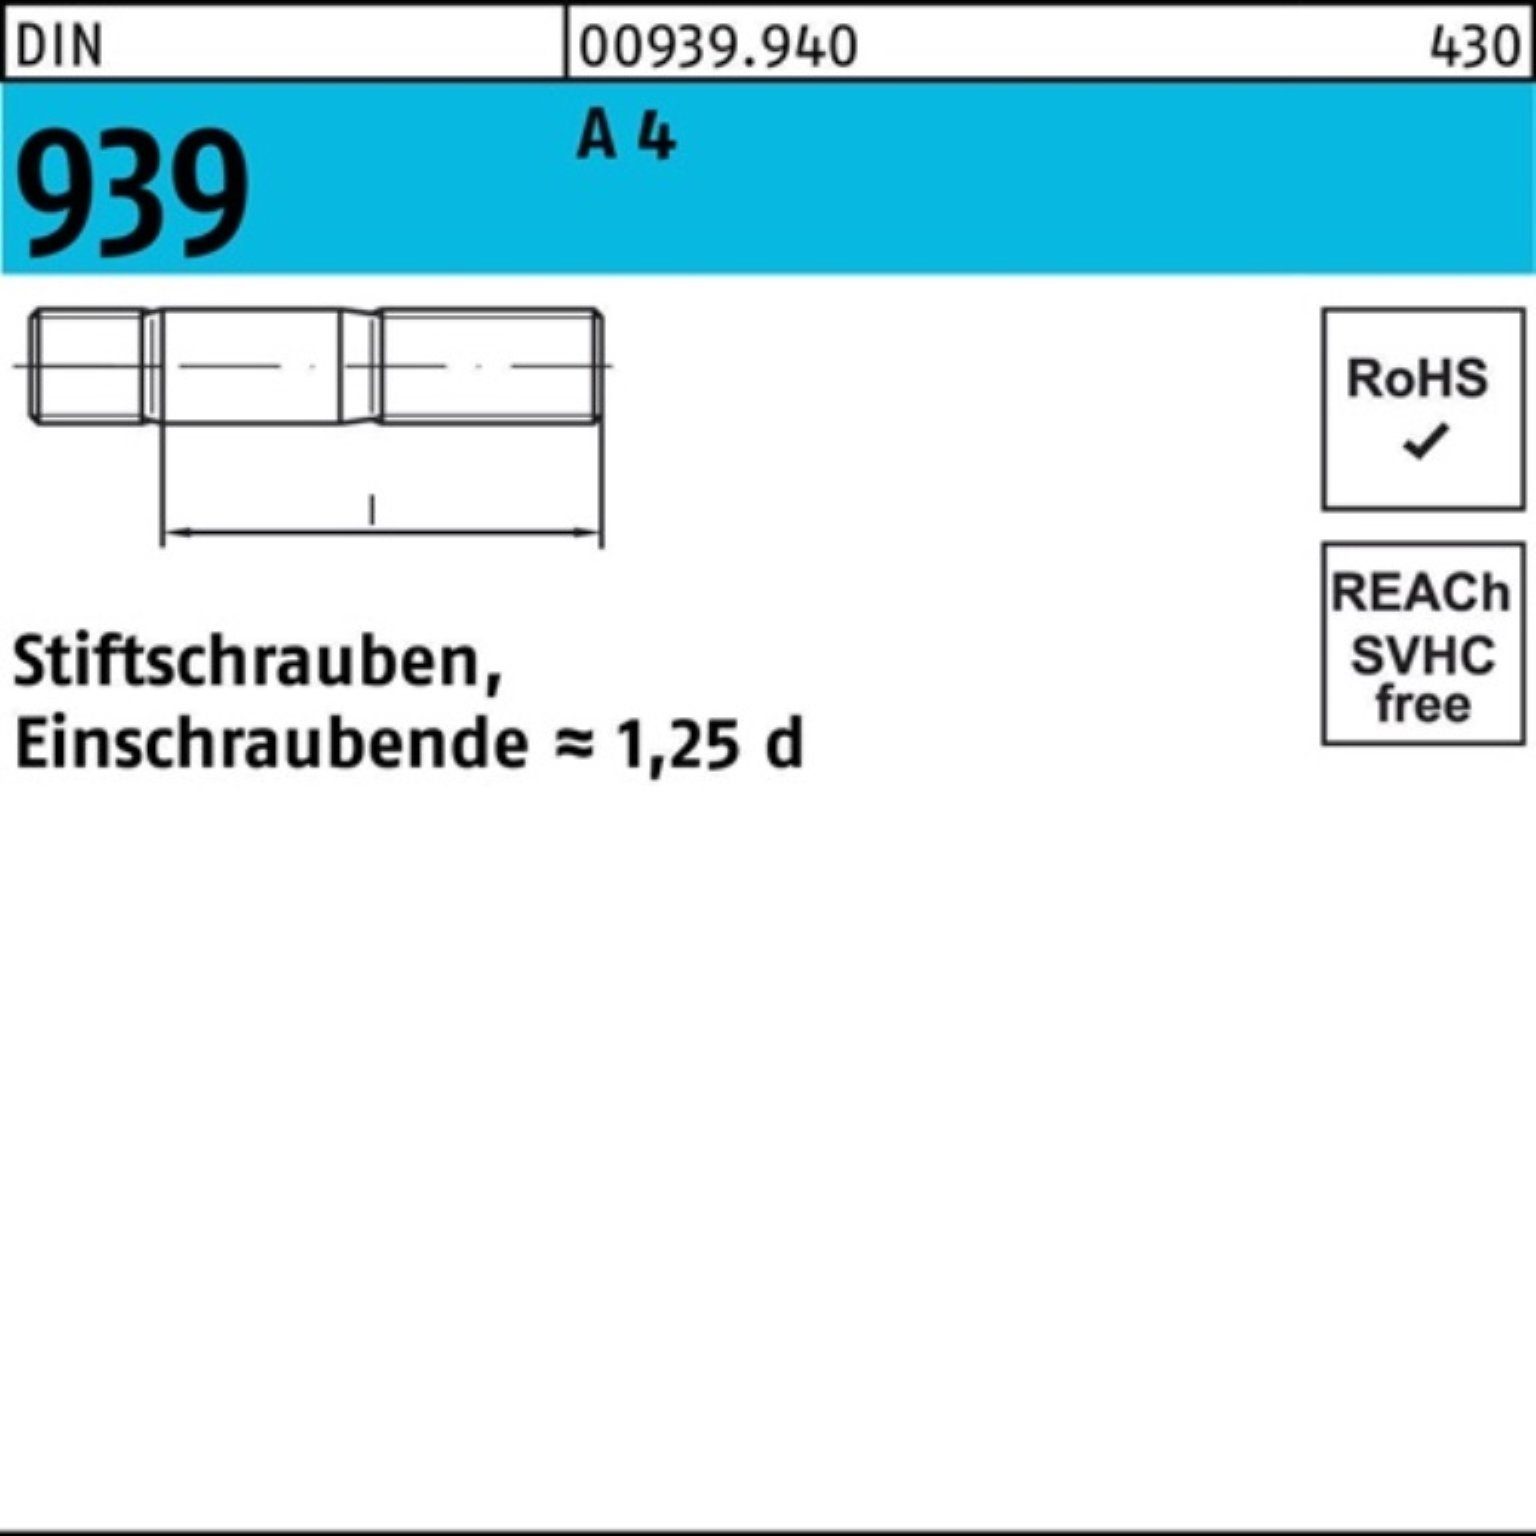 Reyher Stiftschraube 100er Pack Stiftschraube 4 1 90 939 DIN A M24x Einschraubende=1,25d St